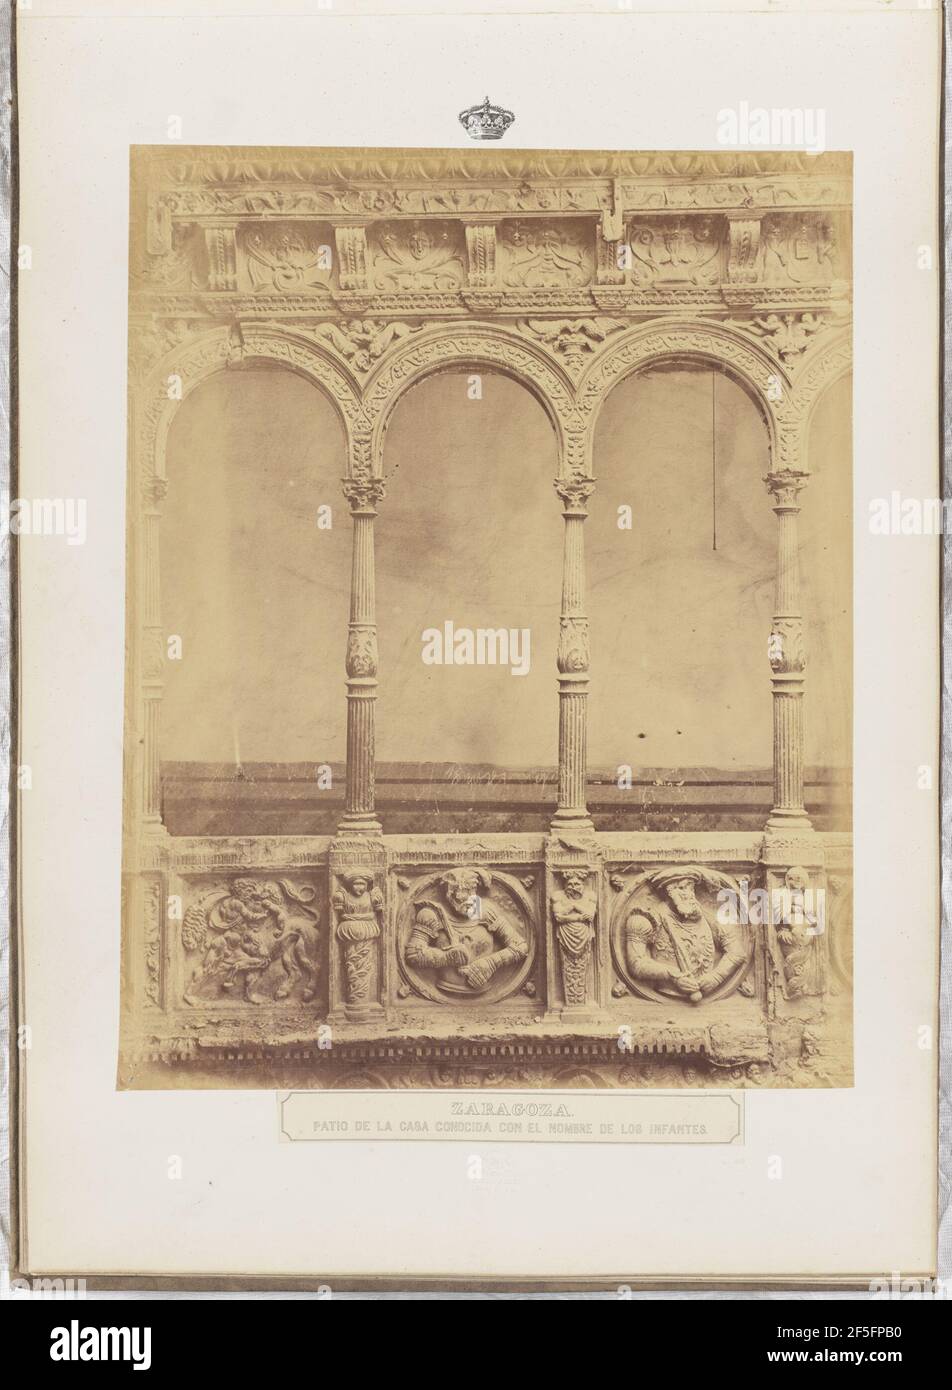 Zaragoza. Patio de la casa conocida con el nombre de Los Infantes. Charles Clifford (English, 1819/1820 - 1863) Stock Photo